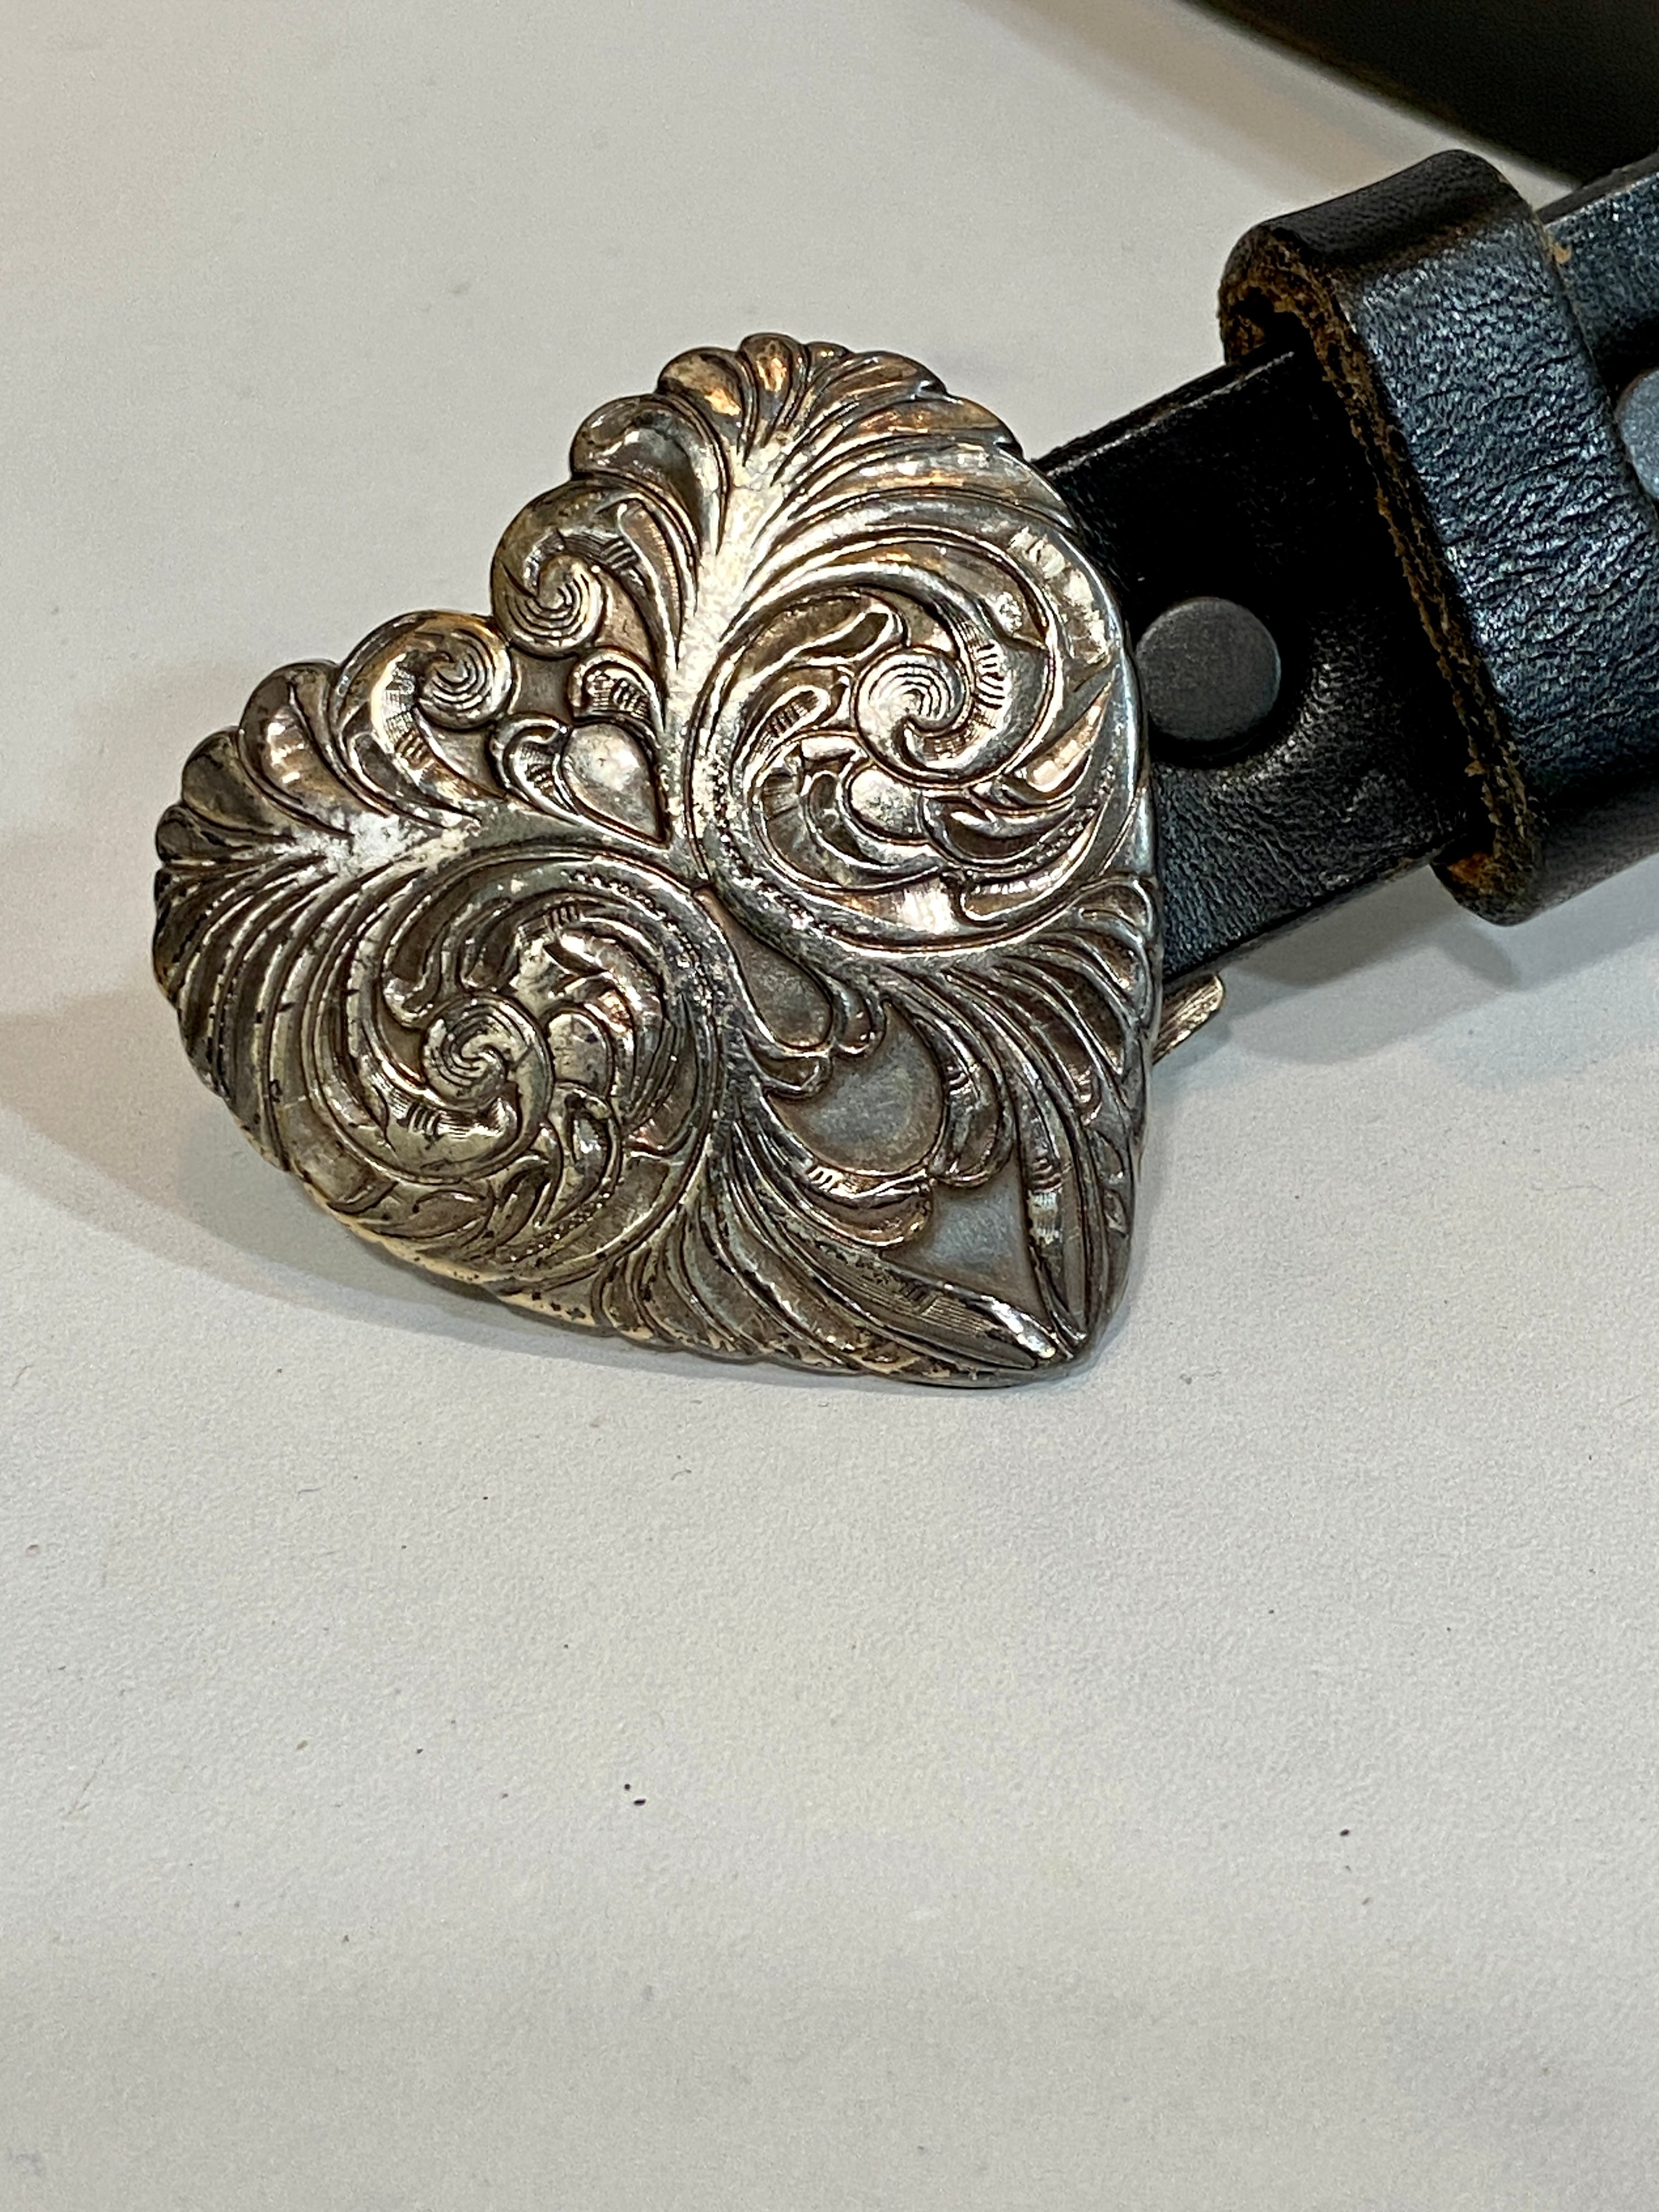 Vintage Engraved heart in black belt